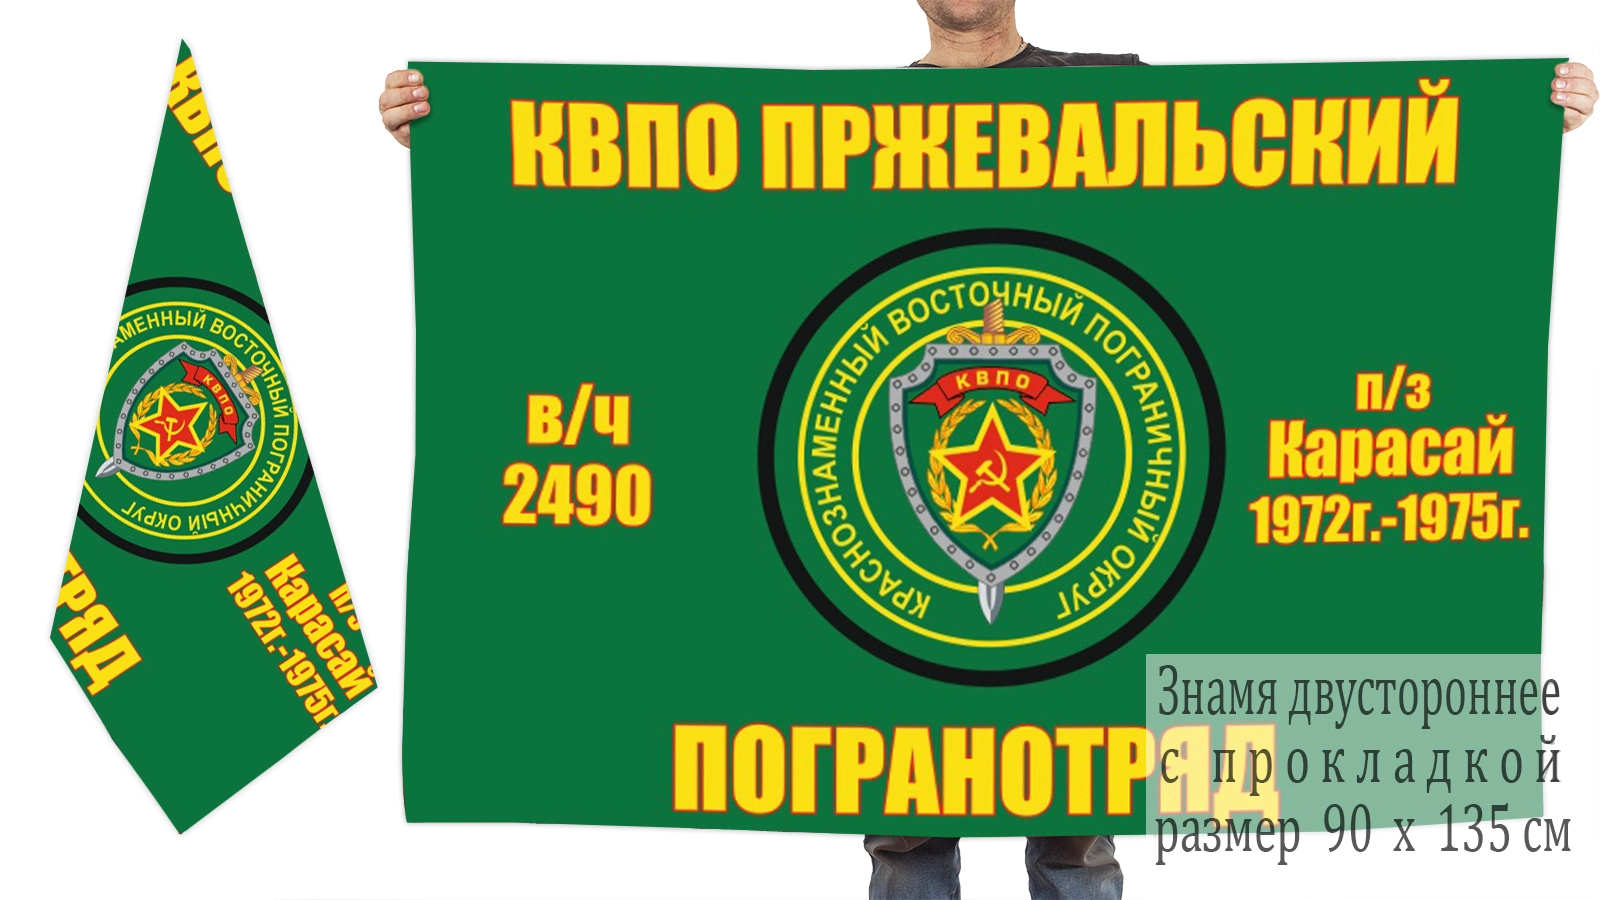 Двусторонний флаг Пржевальского ПогО п/з "Карасай"